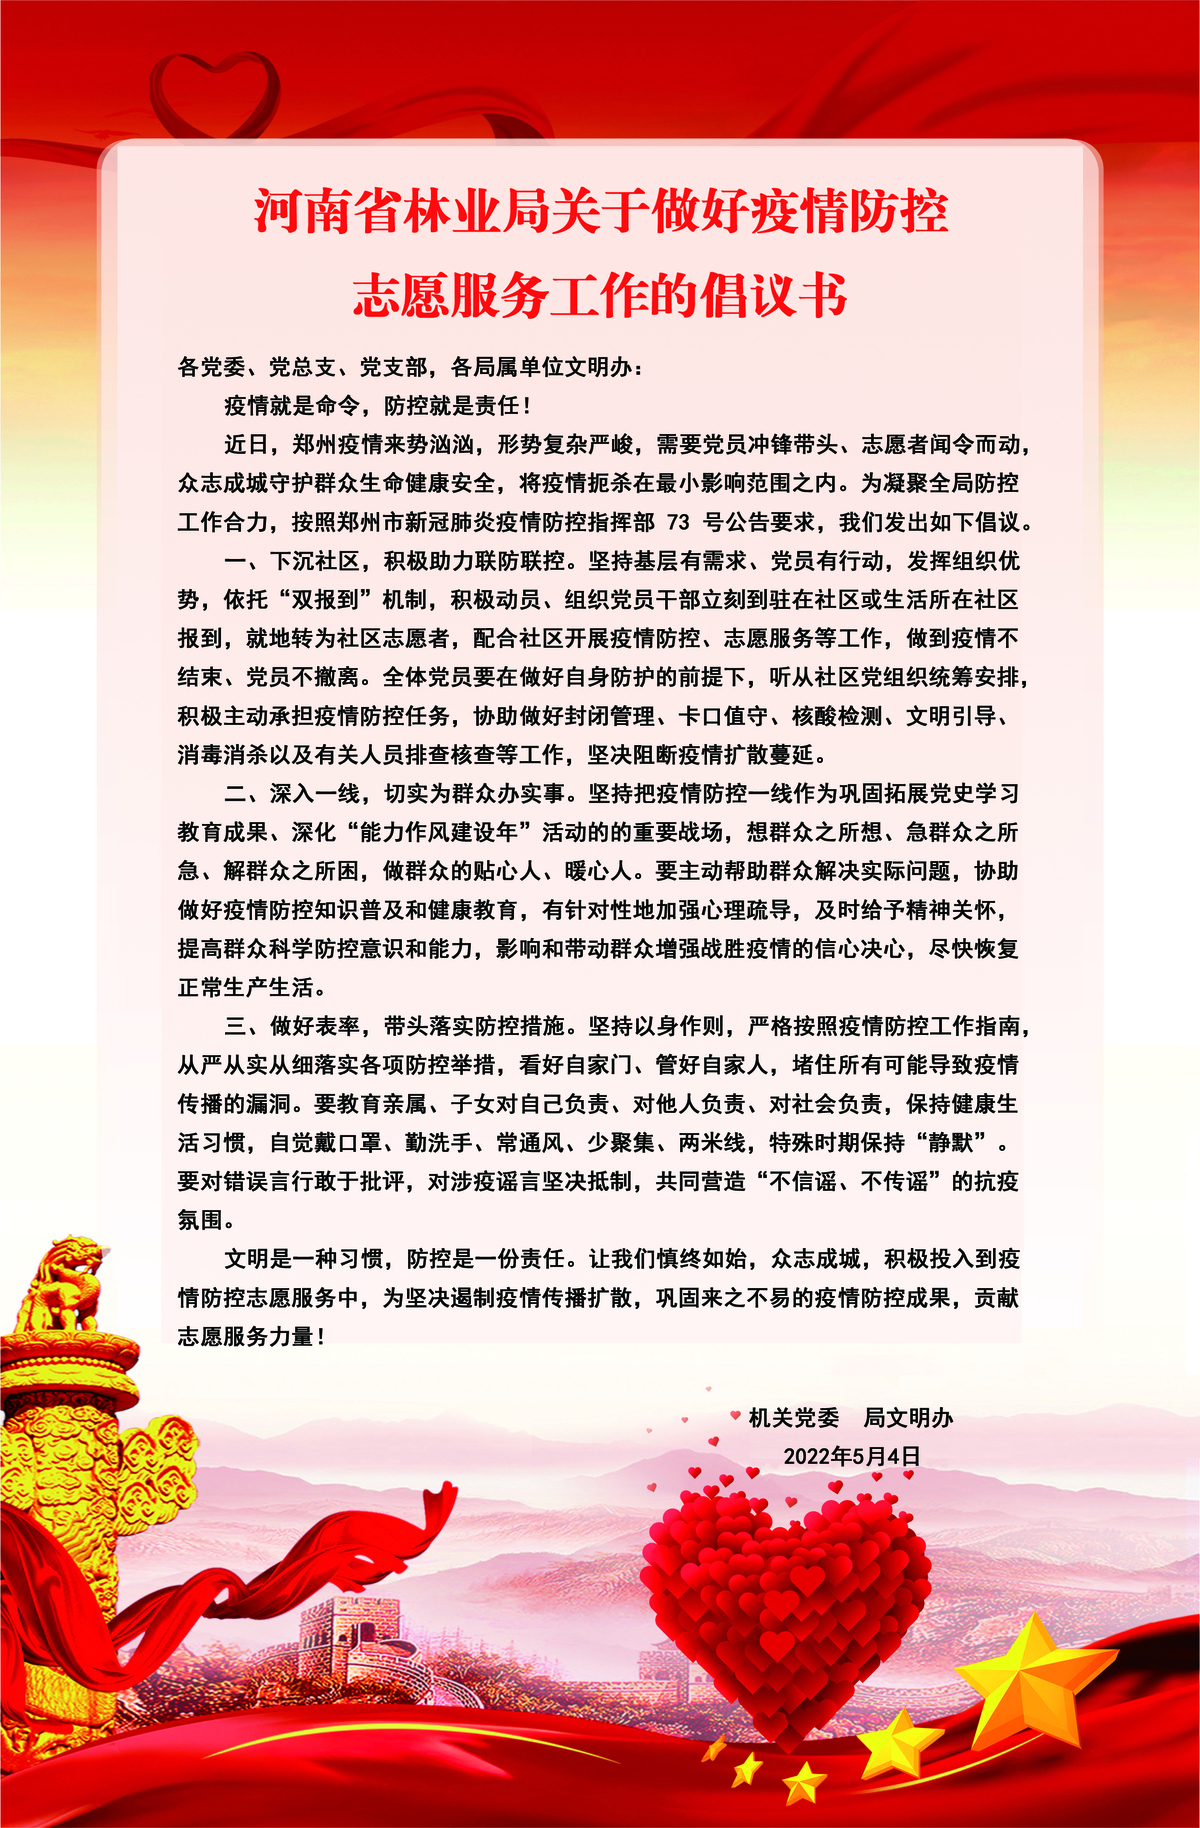 河南省林业局关于做好疫情防控志愿服务工作的倡议书